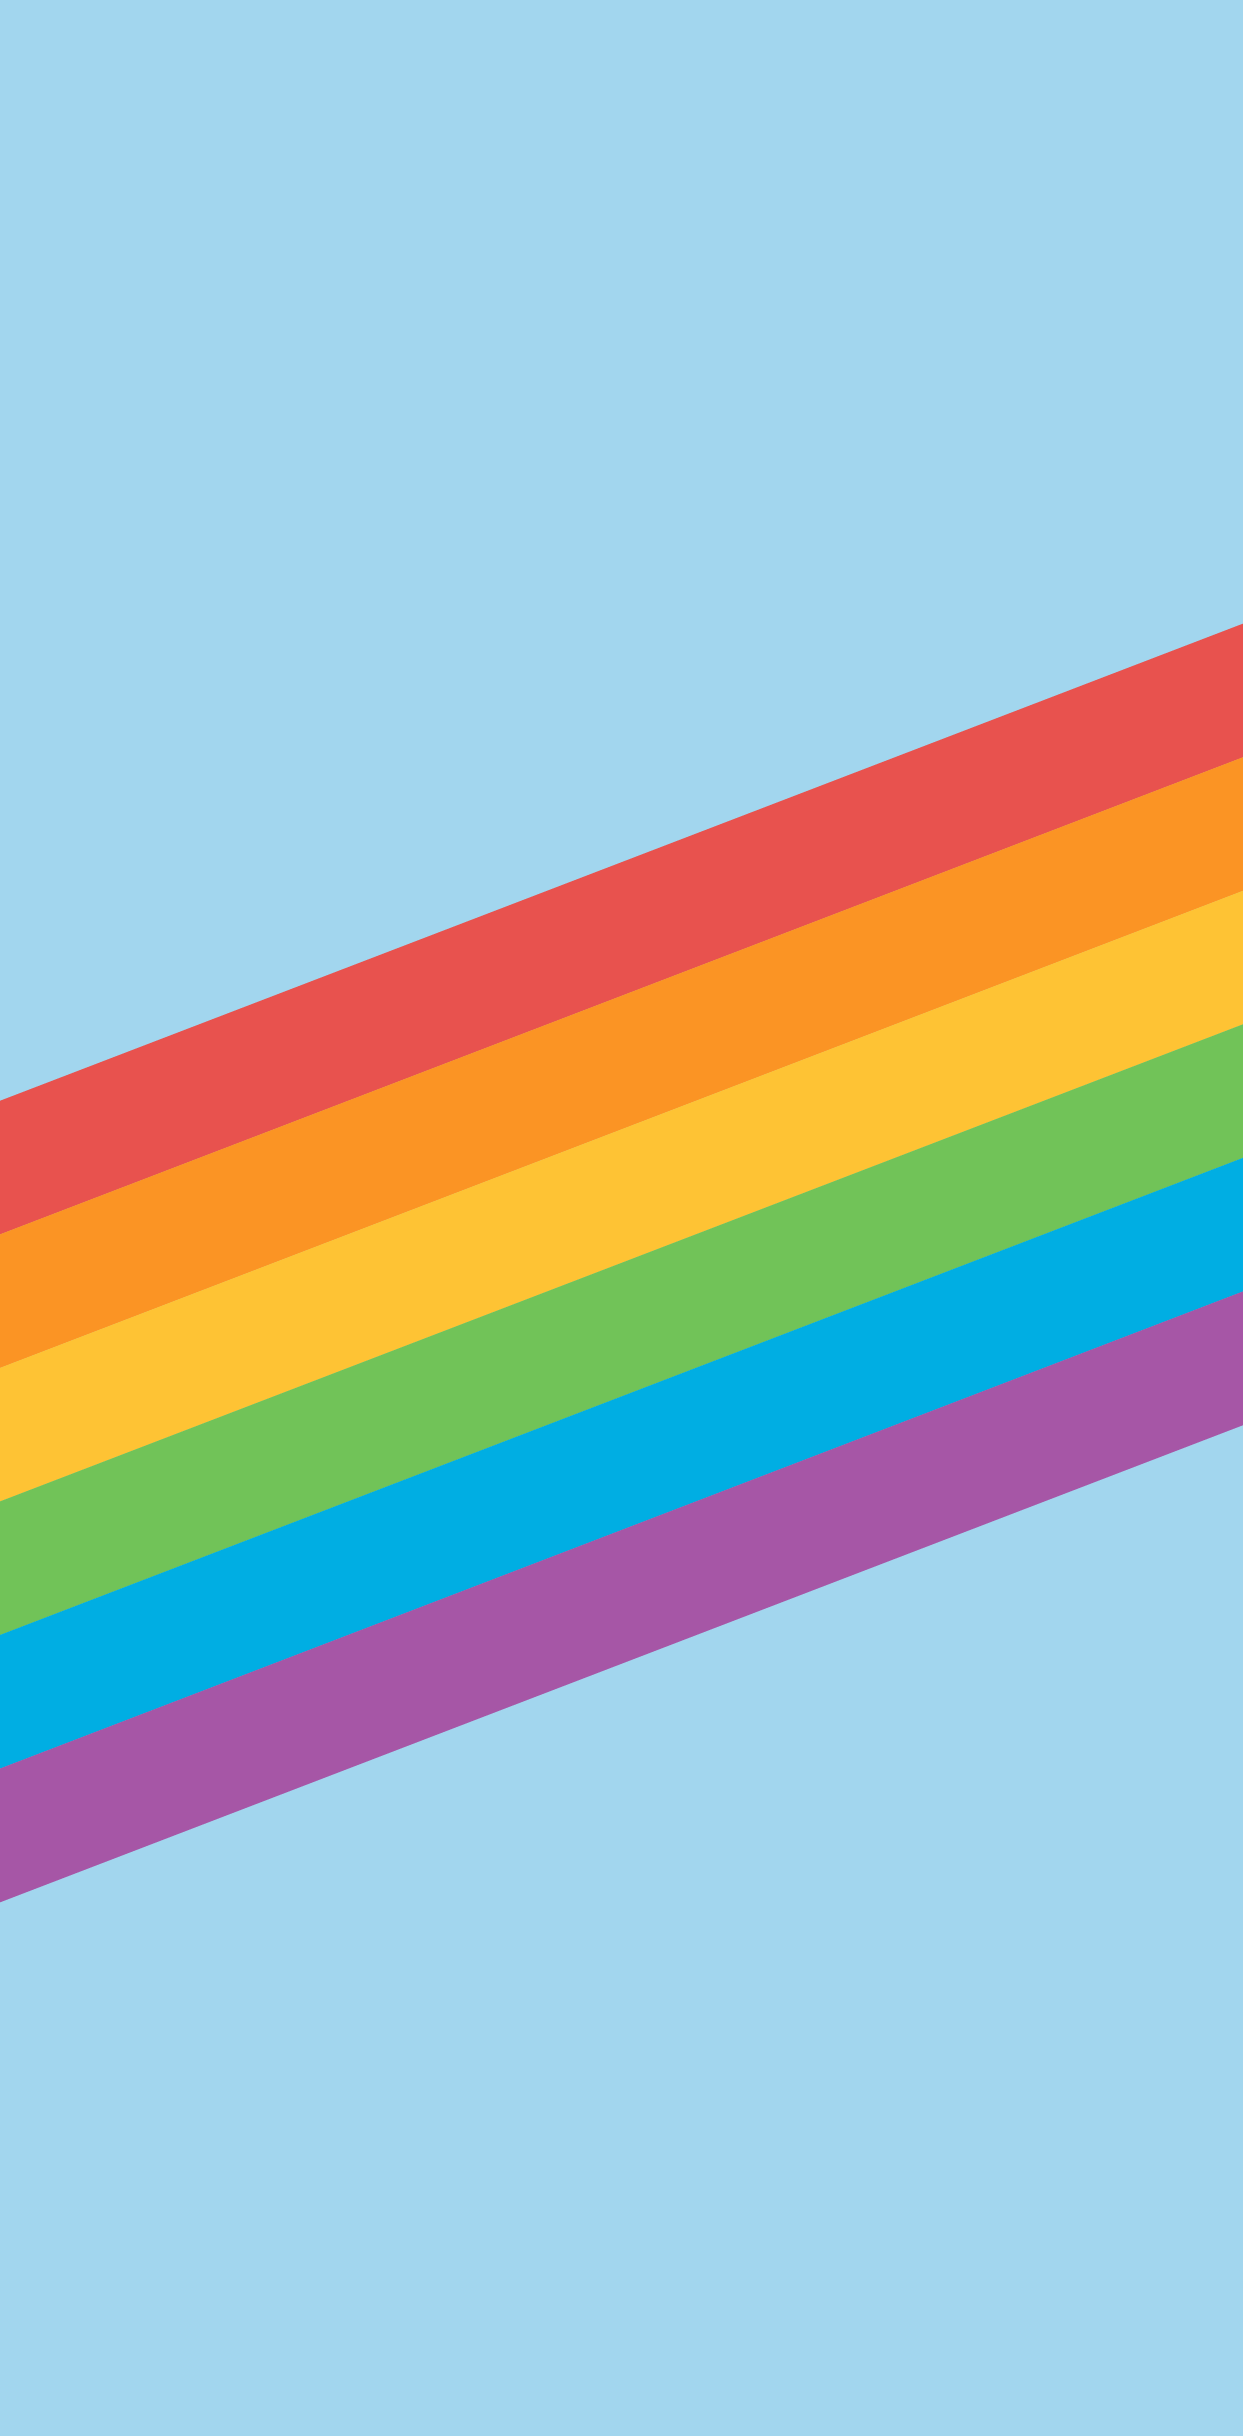 iPhone Pride Wallpapers - Knol Aust